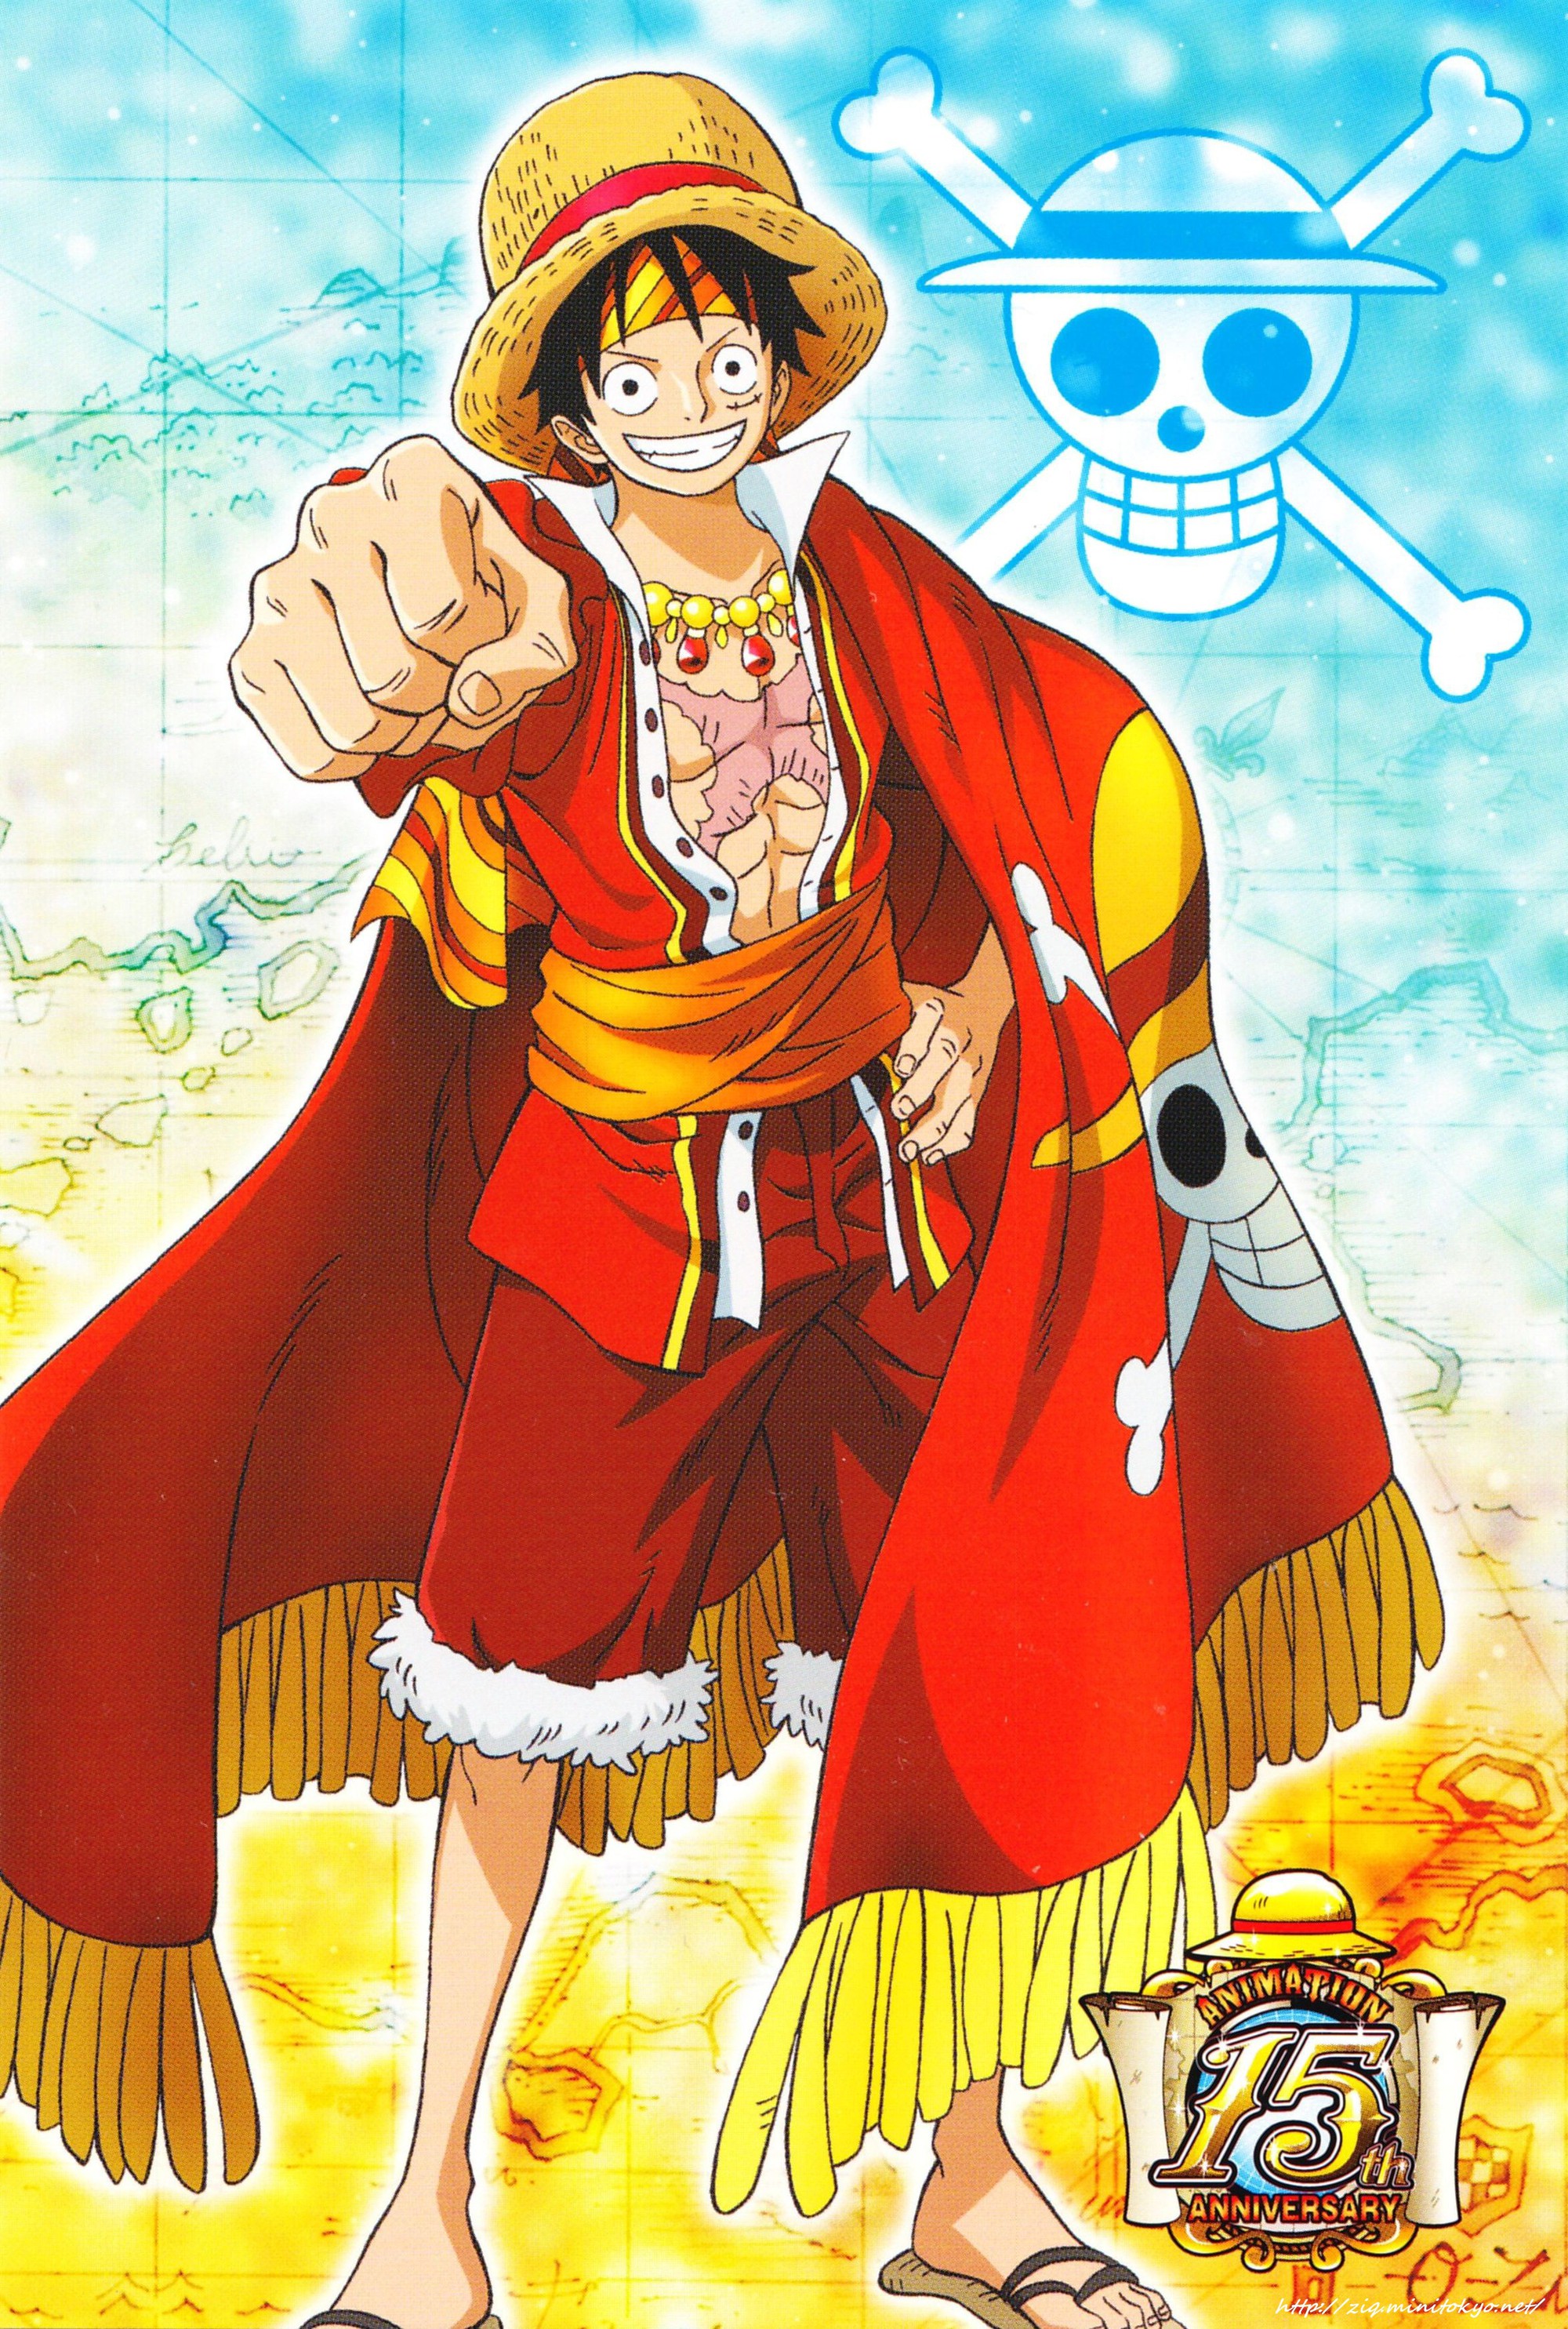 Hình ảnh Luffy khoác áo choàng đỏ rất ngầu